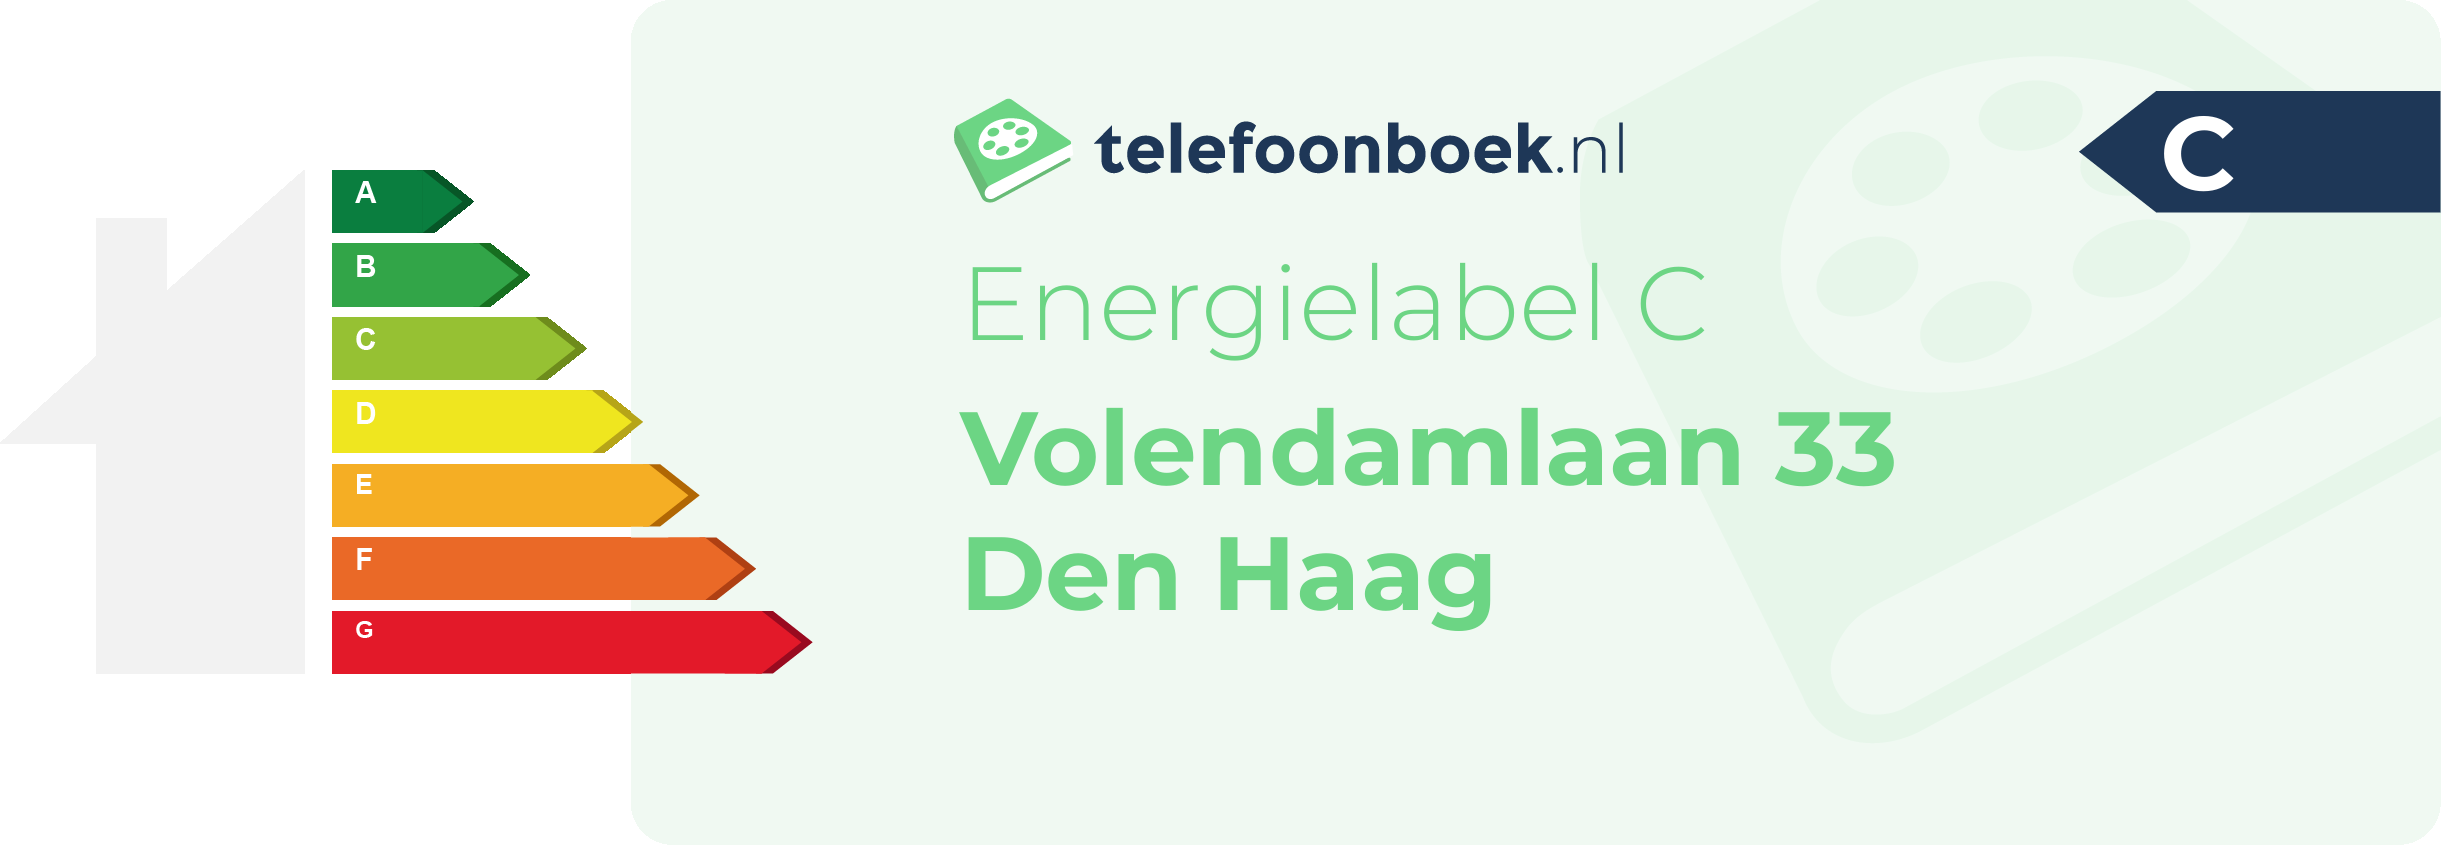 Energielabel Volendamlaan 33 Den Haag